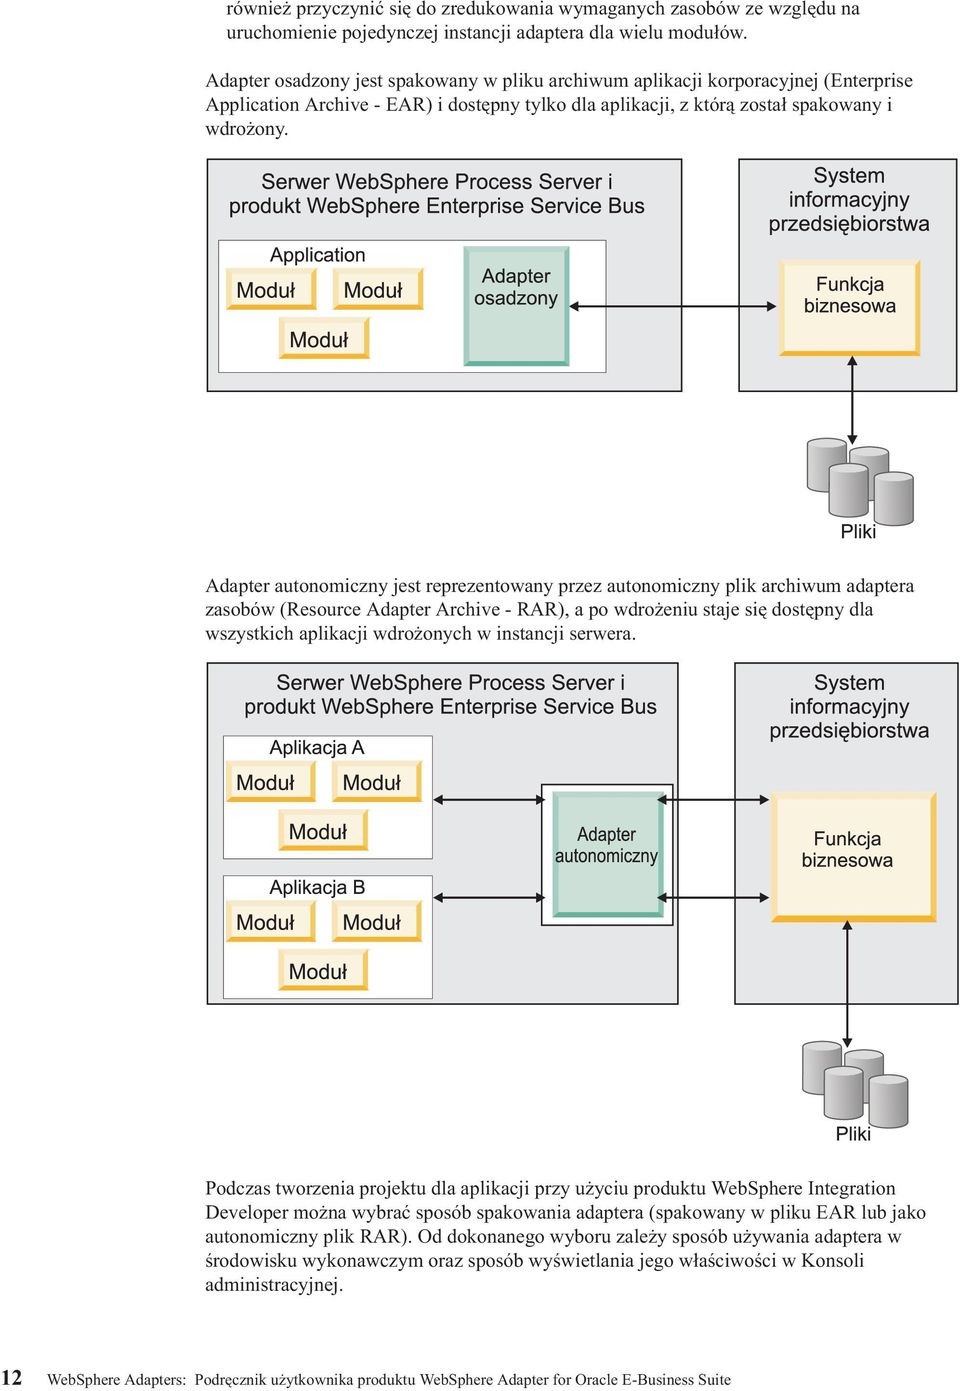 Adapter autonomiczny jest reprezentowany przez autonomiczny plik archiwum adaptera zasobów (Resource Adapter Archive - RAR), a po wdrożeniu staje się dostępny dla wszystkich aplikacji wdrożonych w